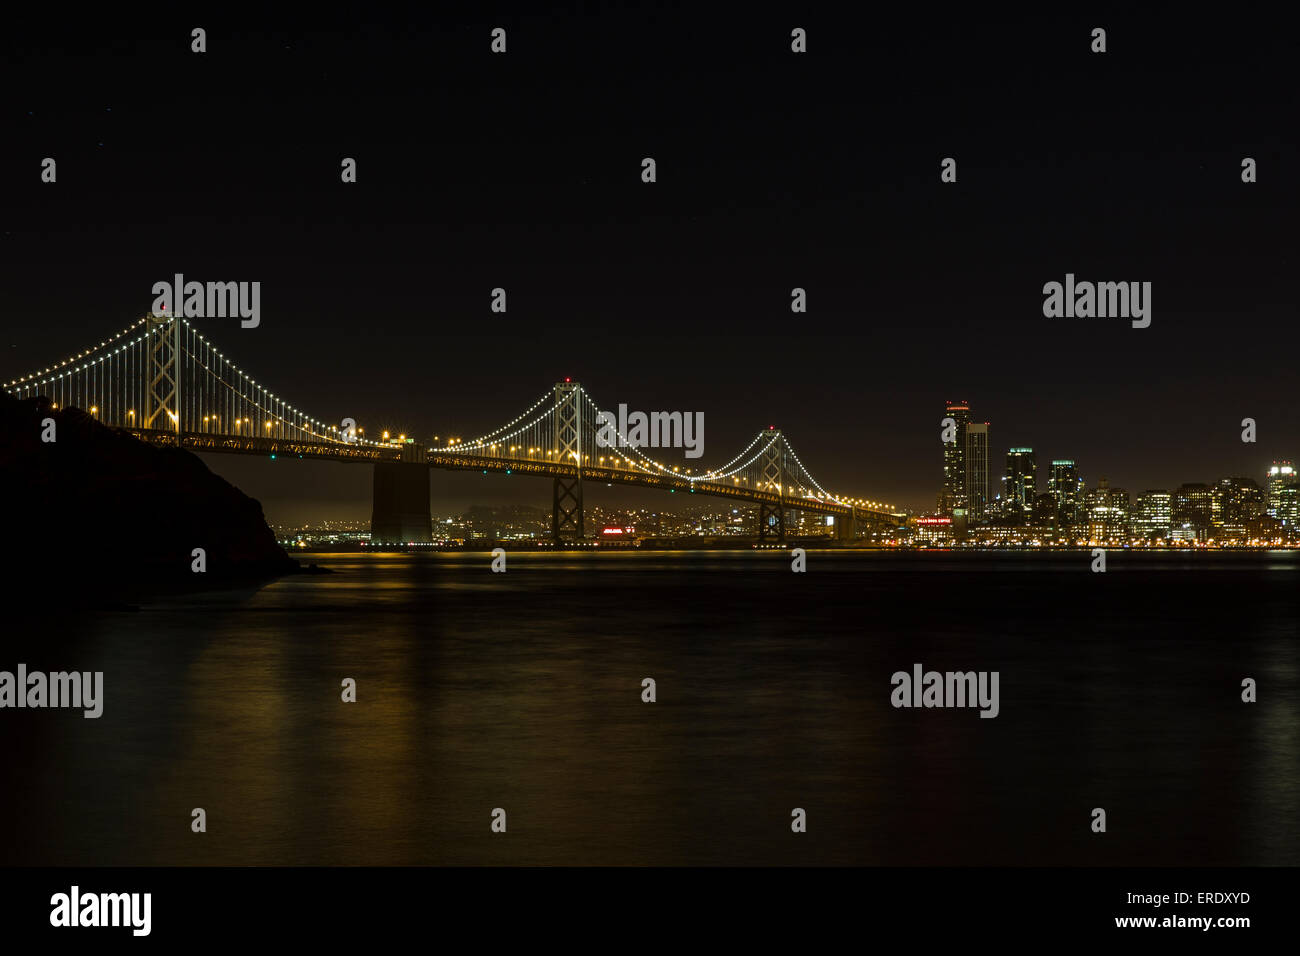 San Francisco-Oakland Bay Bridge at night, California, USA Banque D'Images